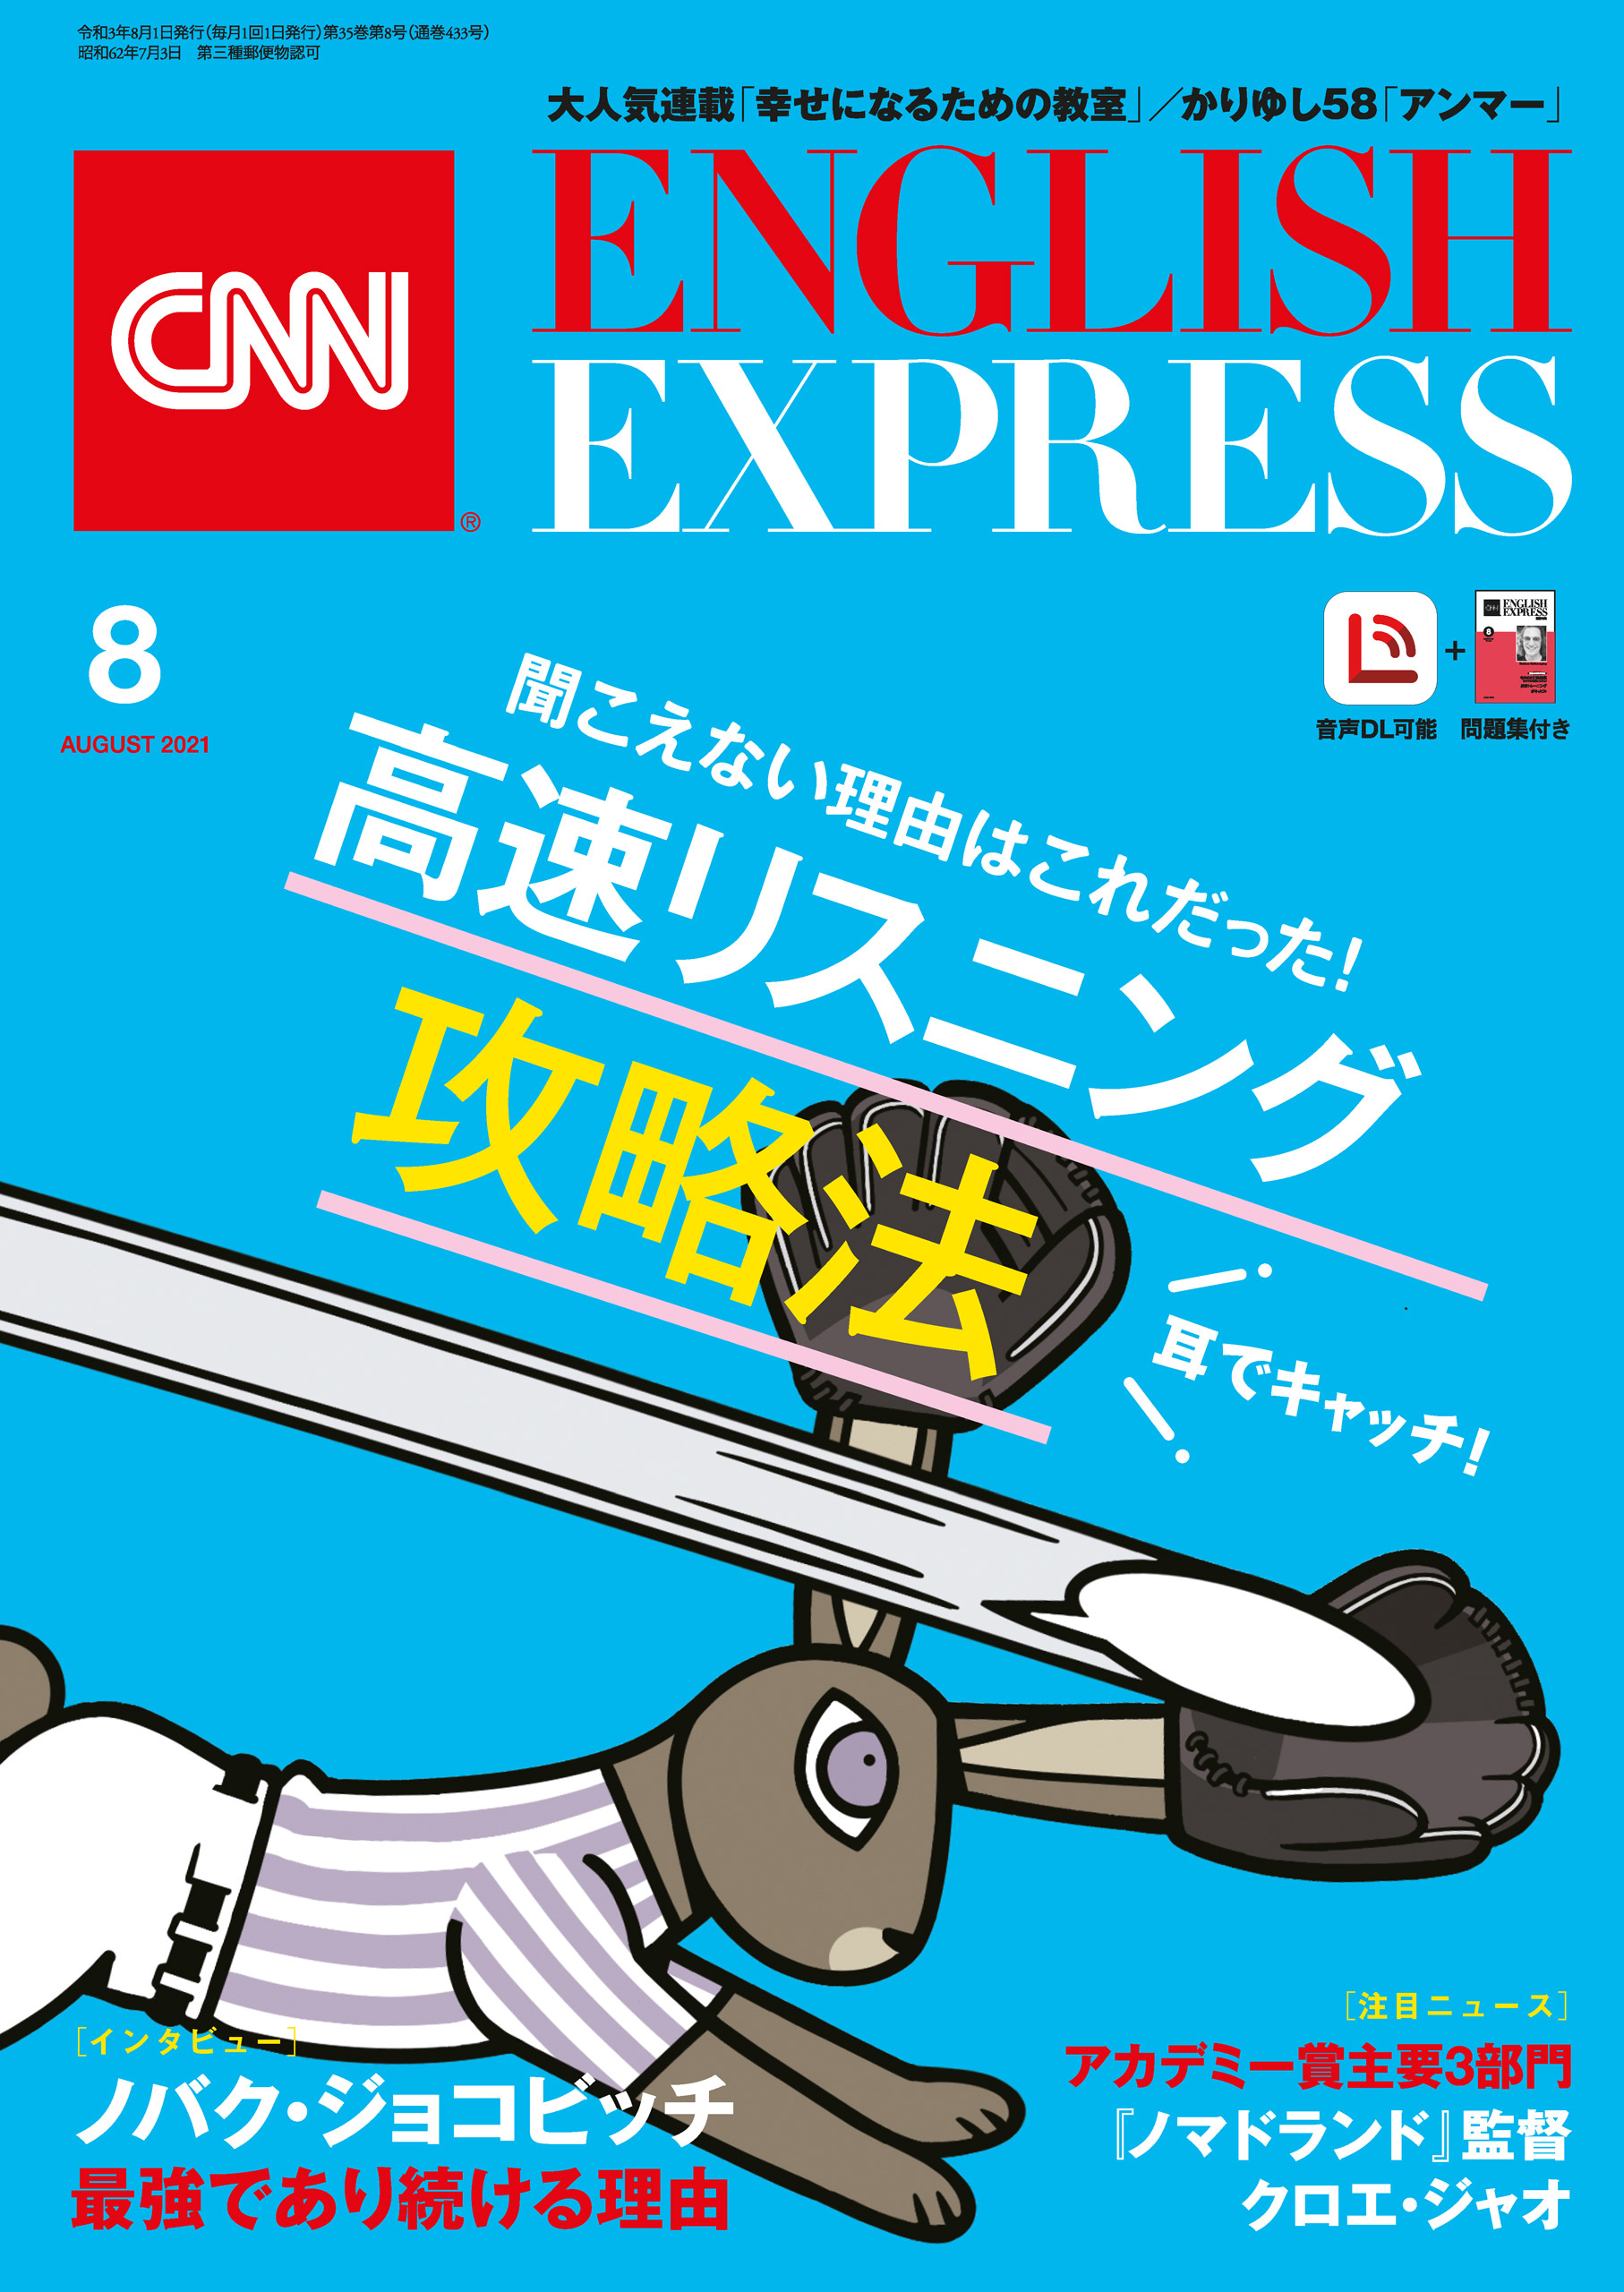 音声DL付き］CNN ENGLISH EXPRESS 2021年8月号 - CNN English Express